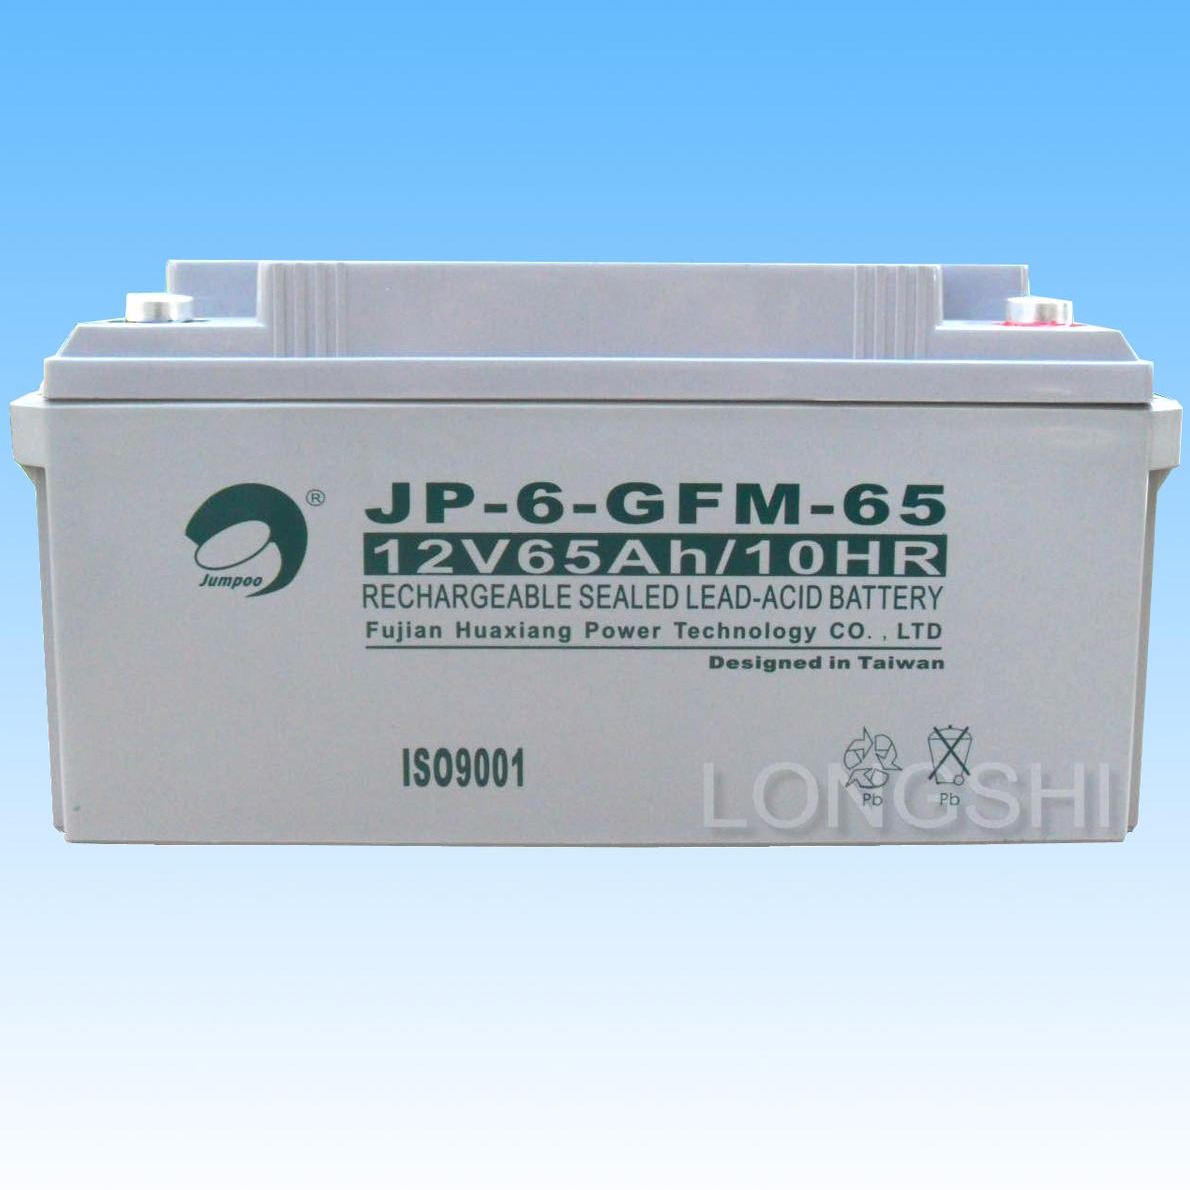 劲博蓄电池12V65AH 劲博JP-6-GFM-65 铅酸免维护蓄电池 质保三年图片